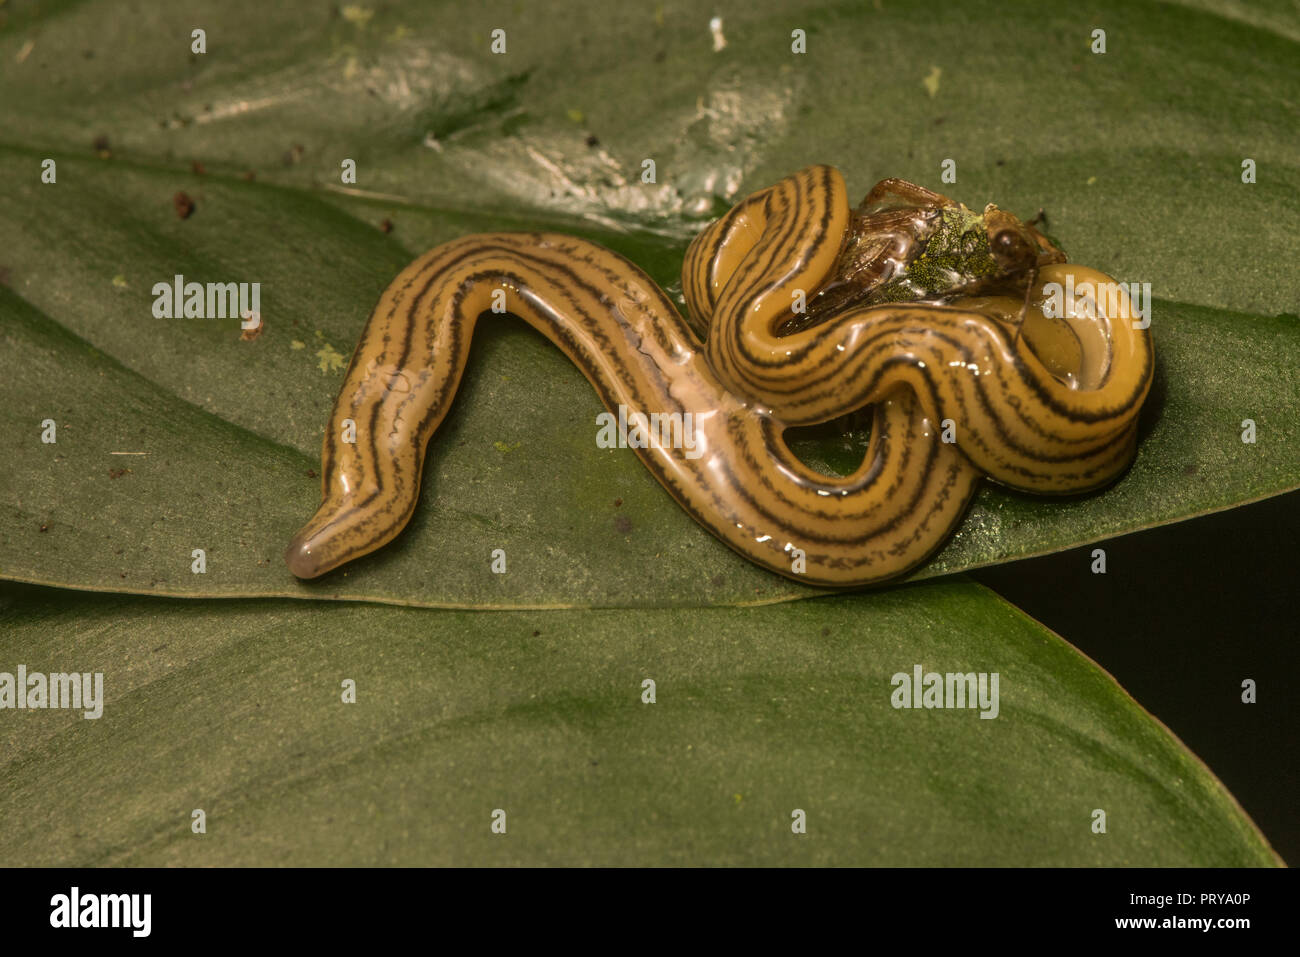 Un piatto di predatori worm, un tipo di platyhelminthes, che ha catturato e sta mangiando la sua preda. In questo caso uno sfortunato grasshopper. Foto Stock